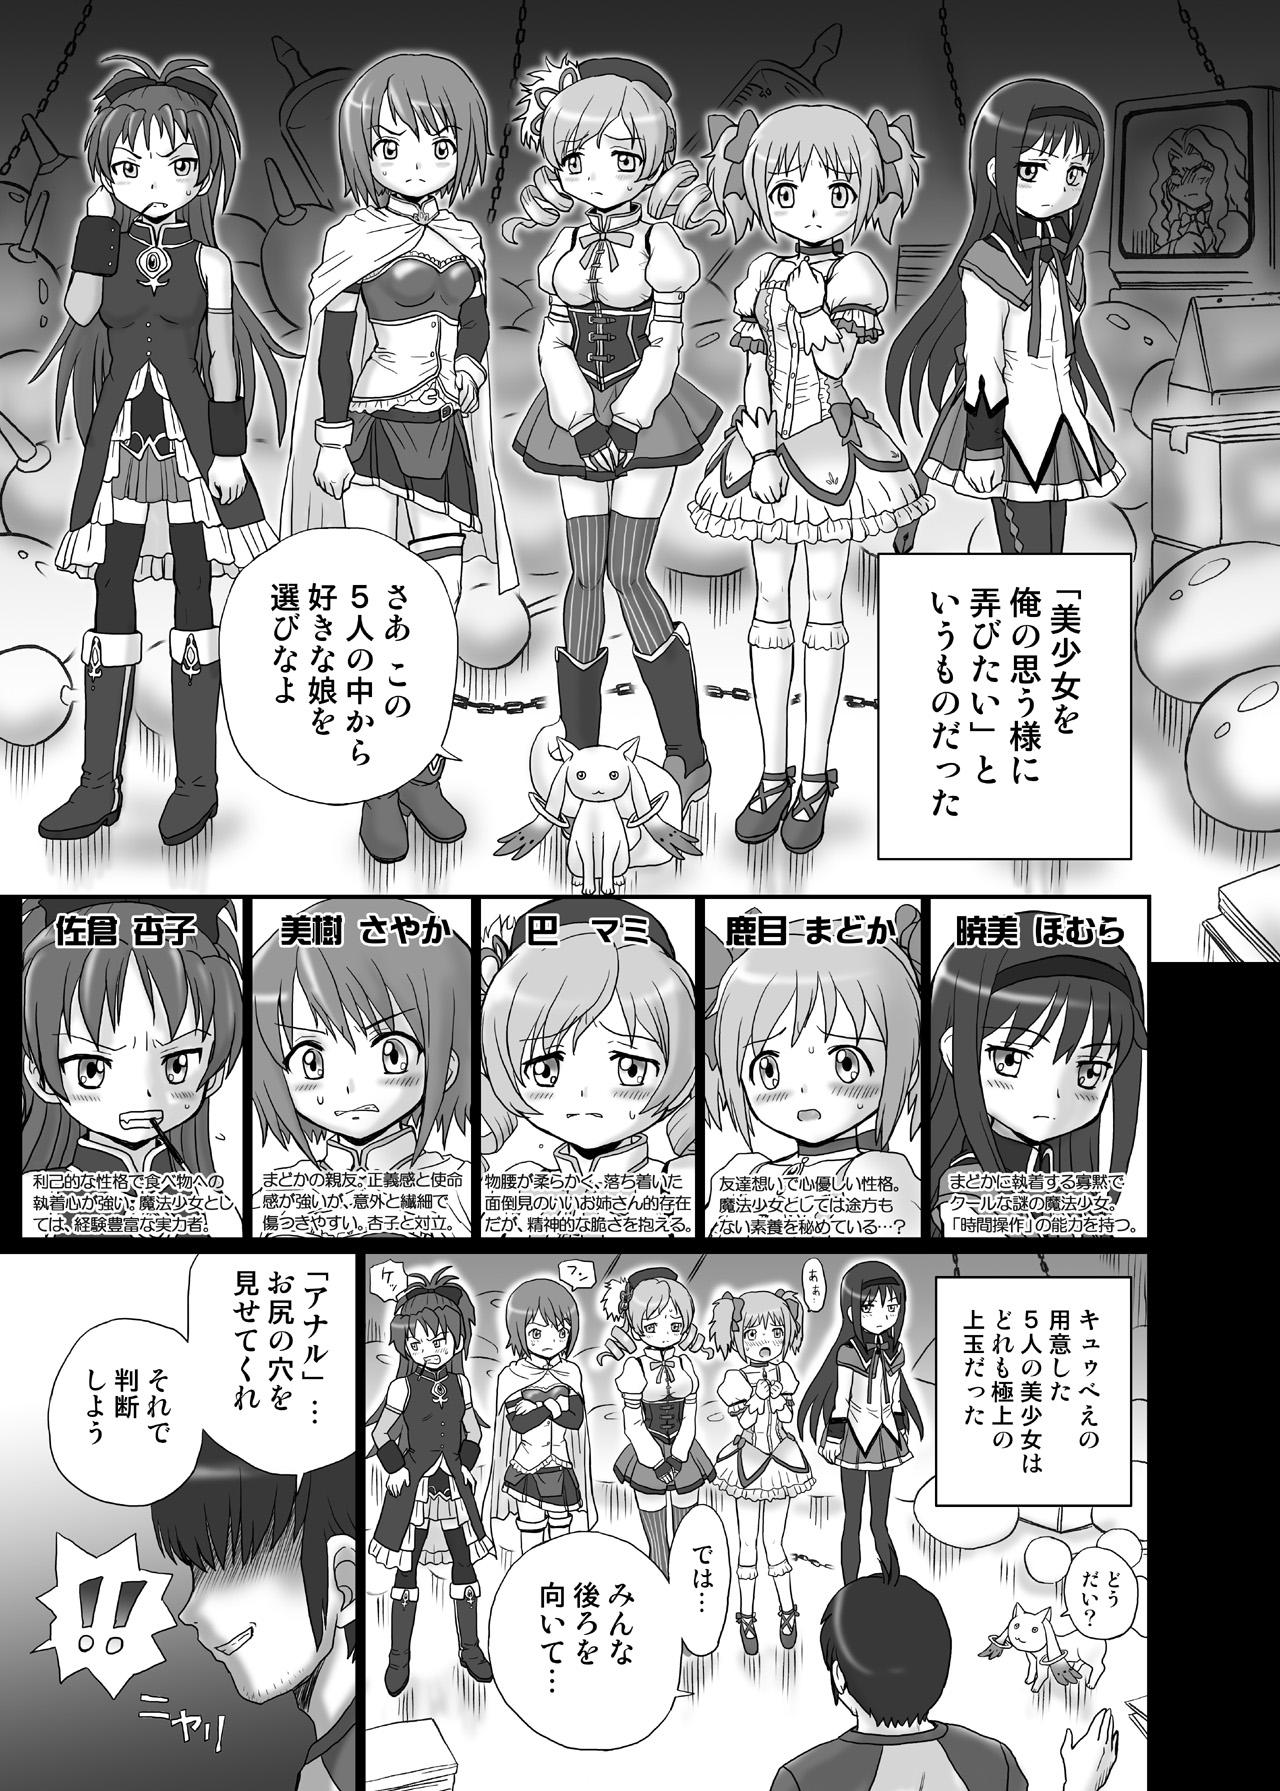 Nudity "Mado★Magi" Anal & Scatolo Sakuhinshuu - Puella magi madoka magica Step Fantasy - Page 4